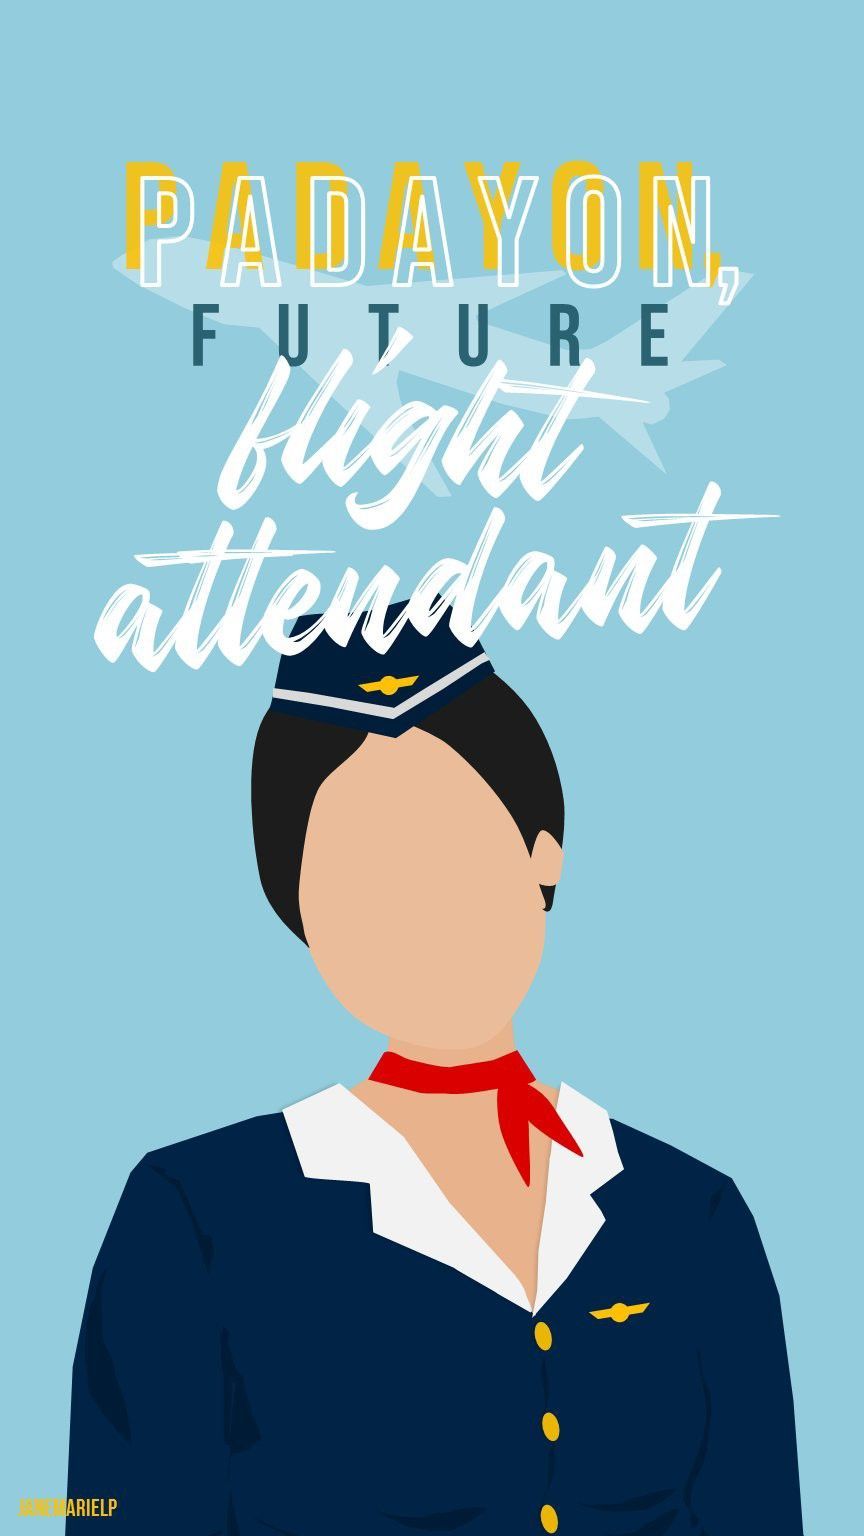 motivation wallpaper. Flight attendant .ph